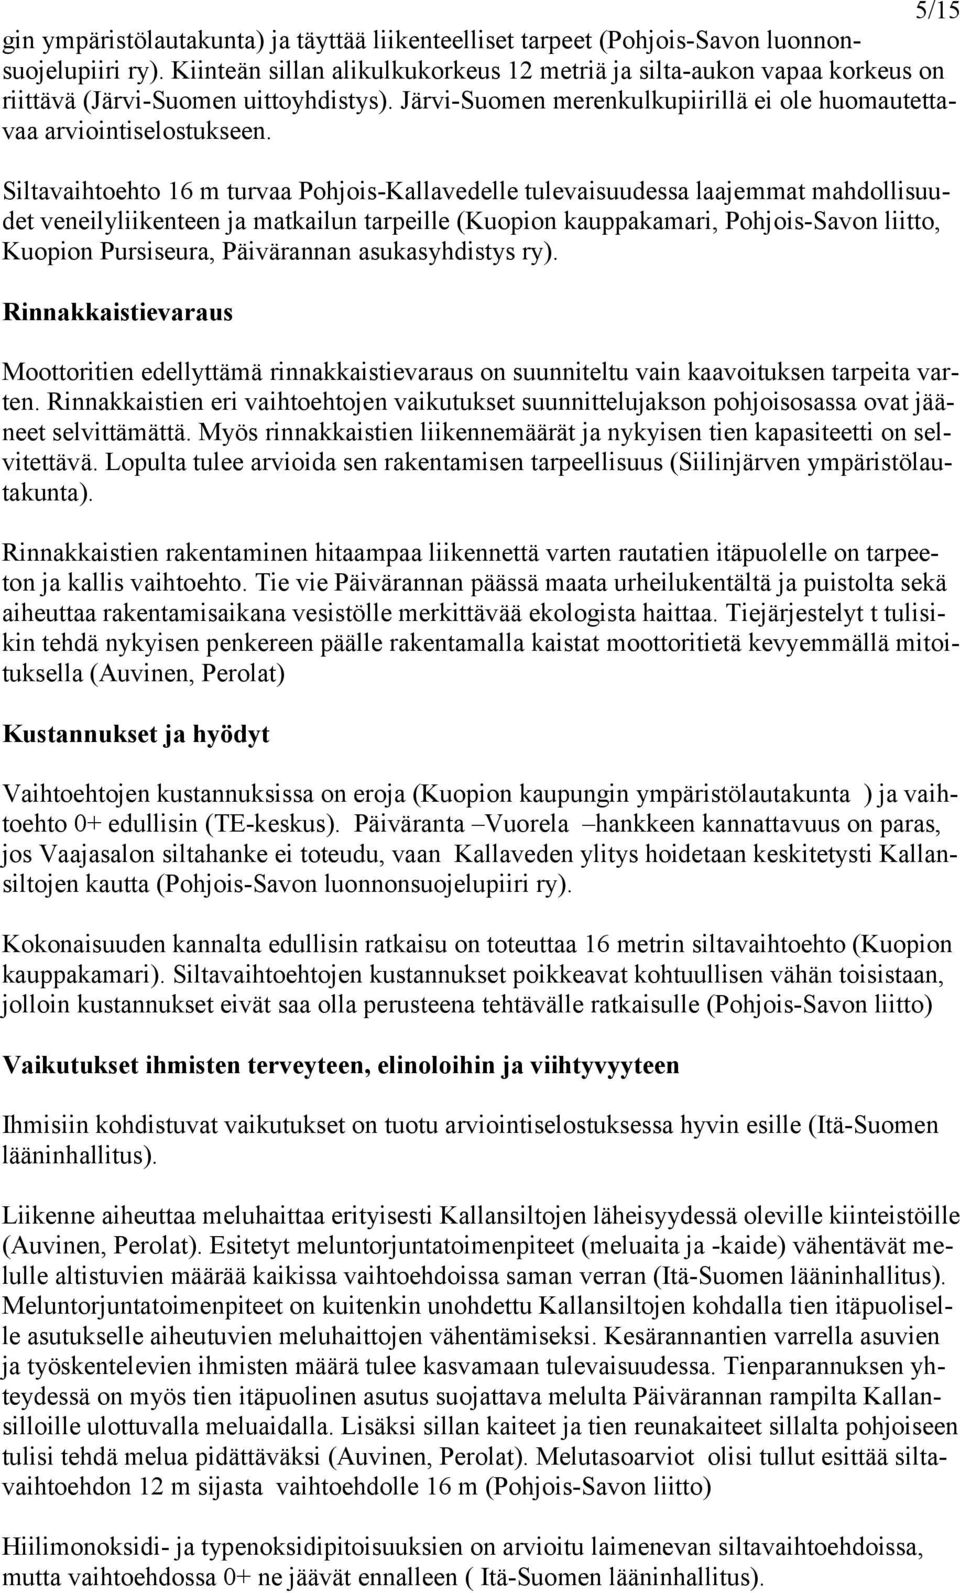 Siltavaihtoehto 16 m turvaa Pohjois-Kallavedelle tulevaisuudessa laajemmat mahdollisuudet veneilyliikenteen ja matkailun tarpeille (Kuopion kauppakamari, Pohjois-Savon liitto, Kuopion Pursiseura,